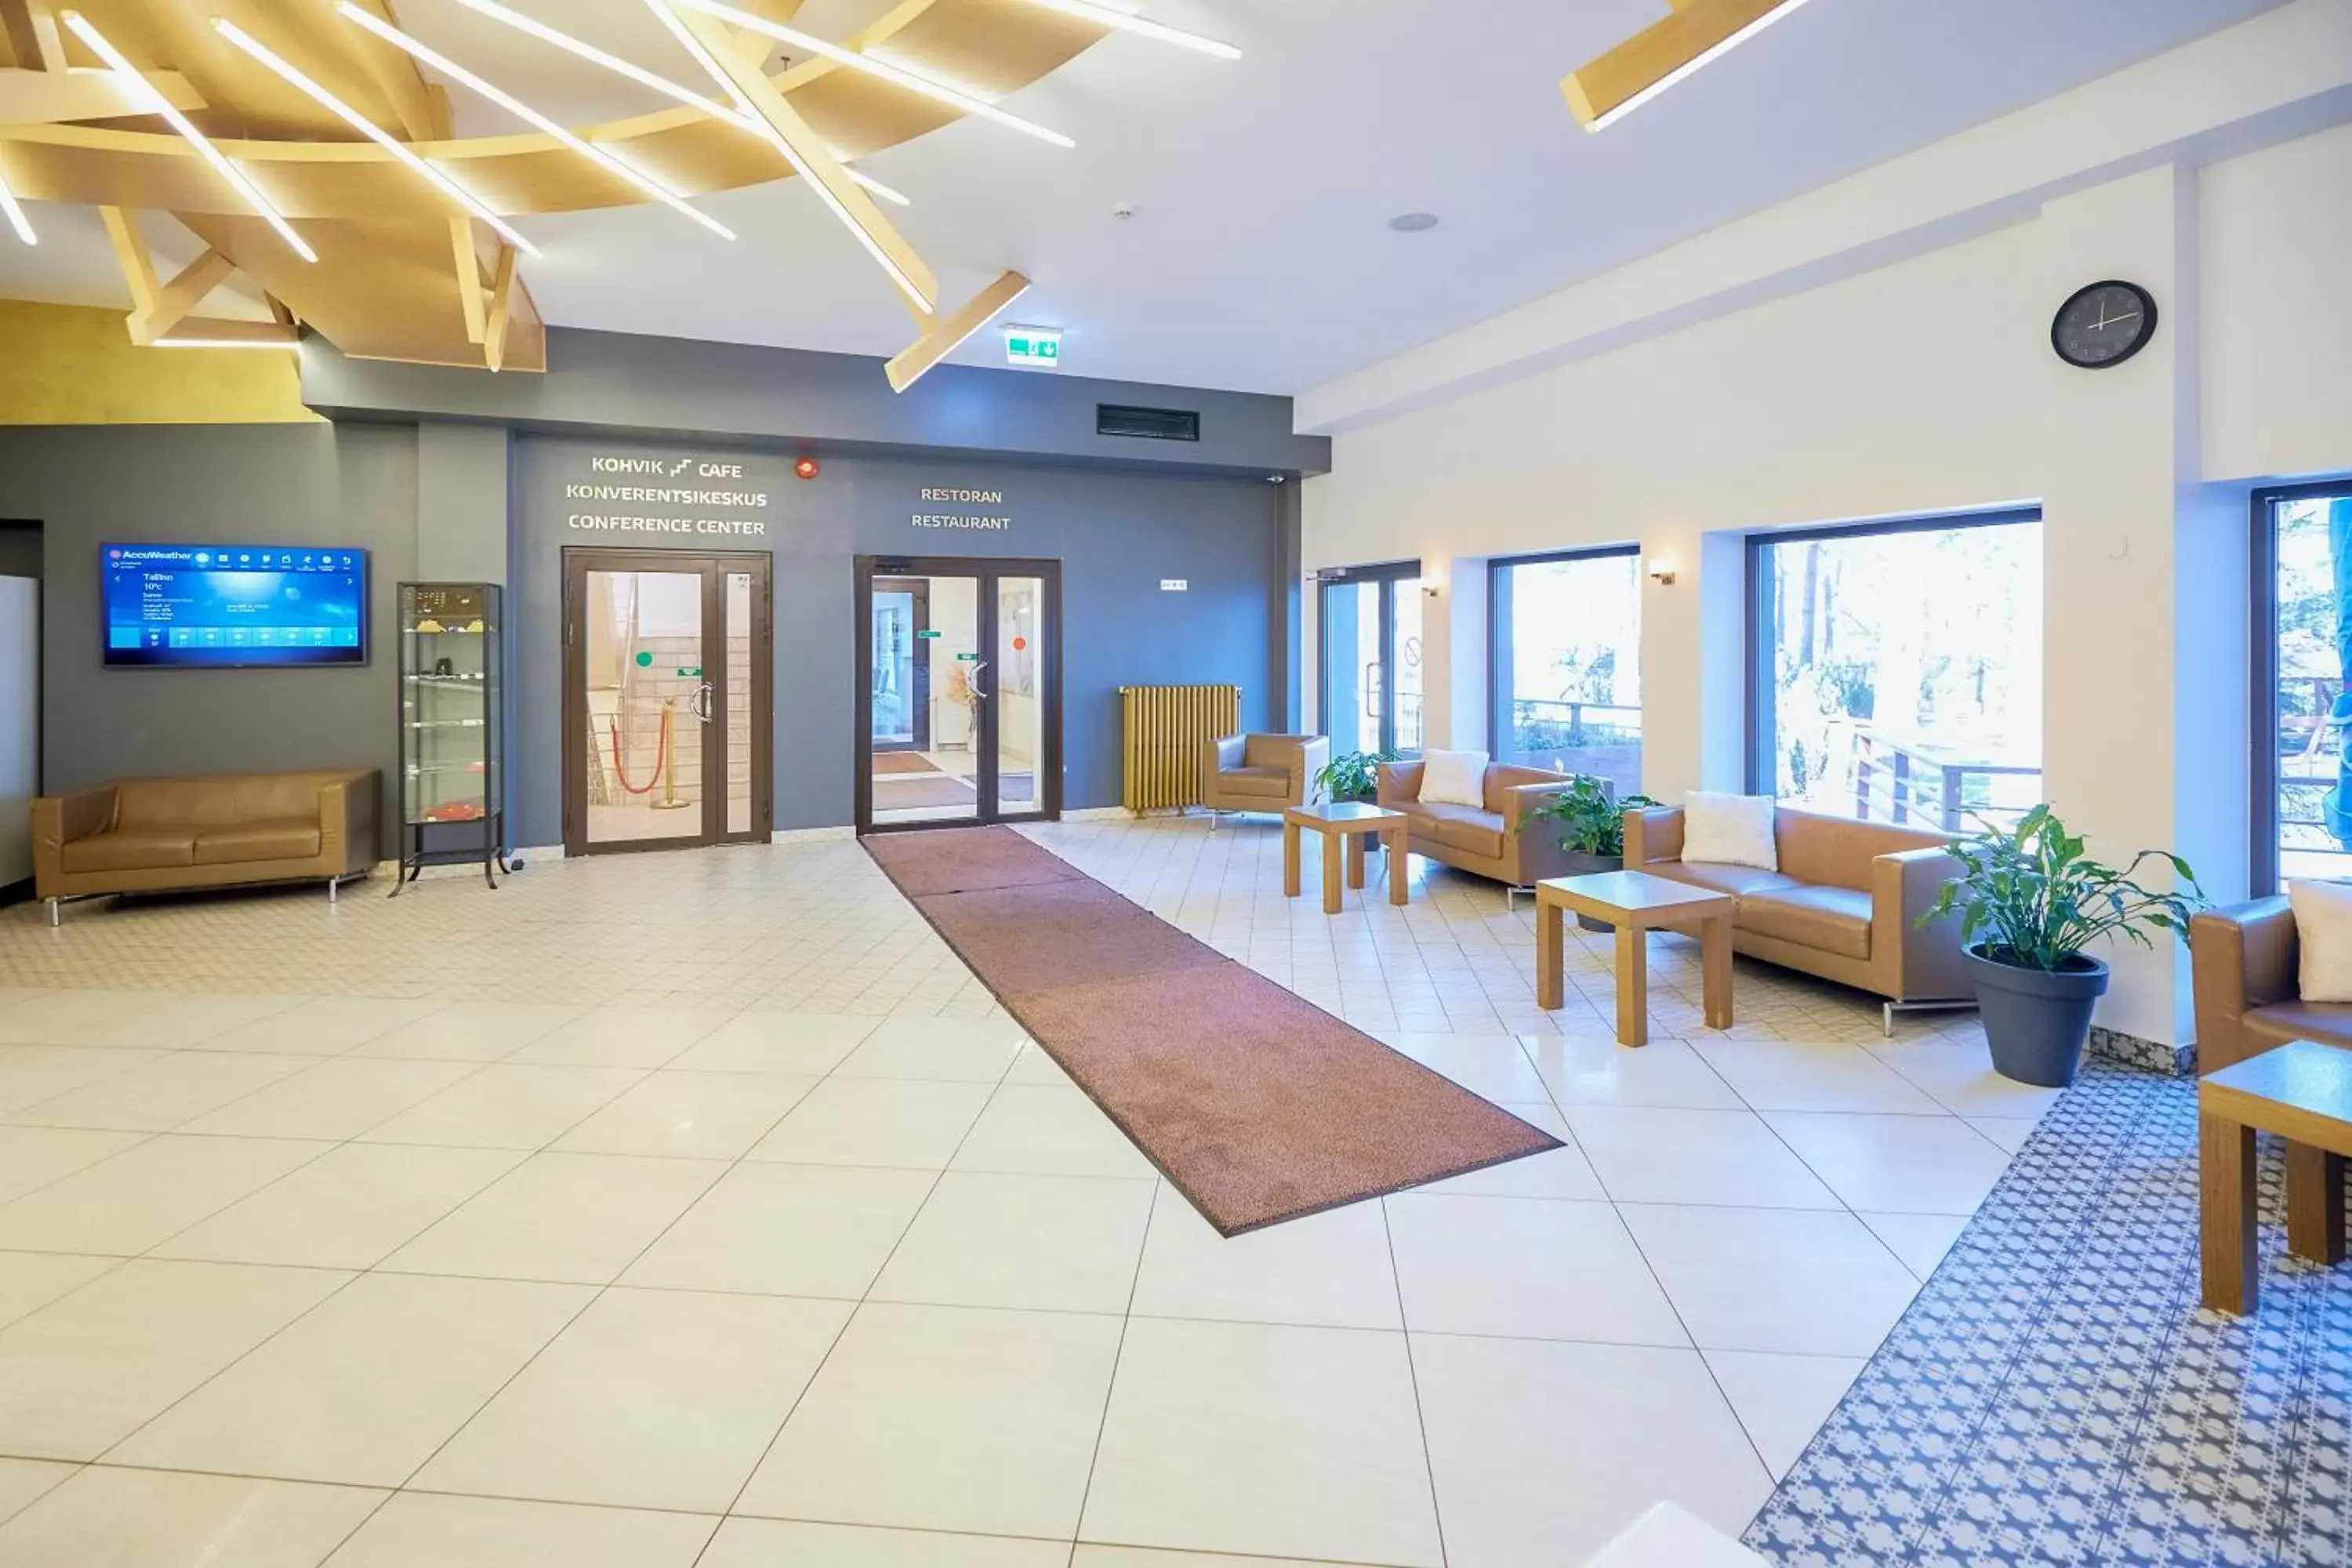 Lobby or reception in Hotel Dzingel